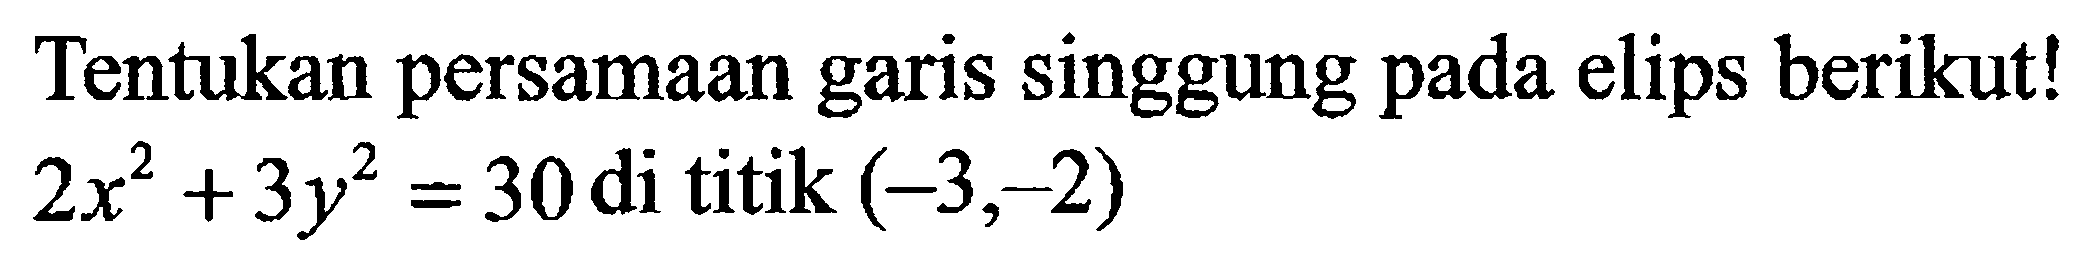 Tentukan persamaan garis singgung pada elips berikut! 2x^2+3y^2=30 di titik (-3,-2)